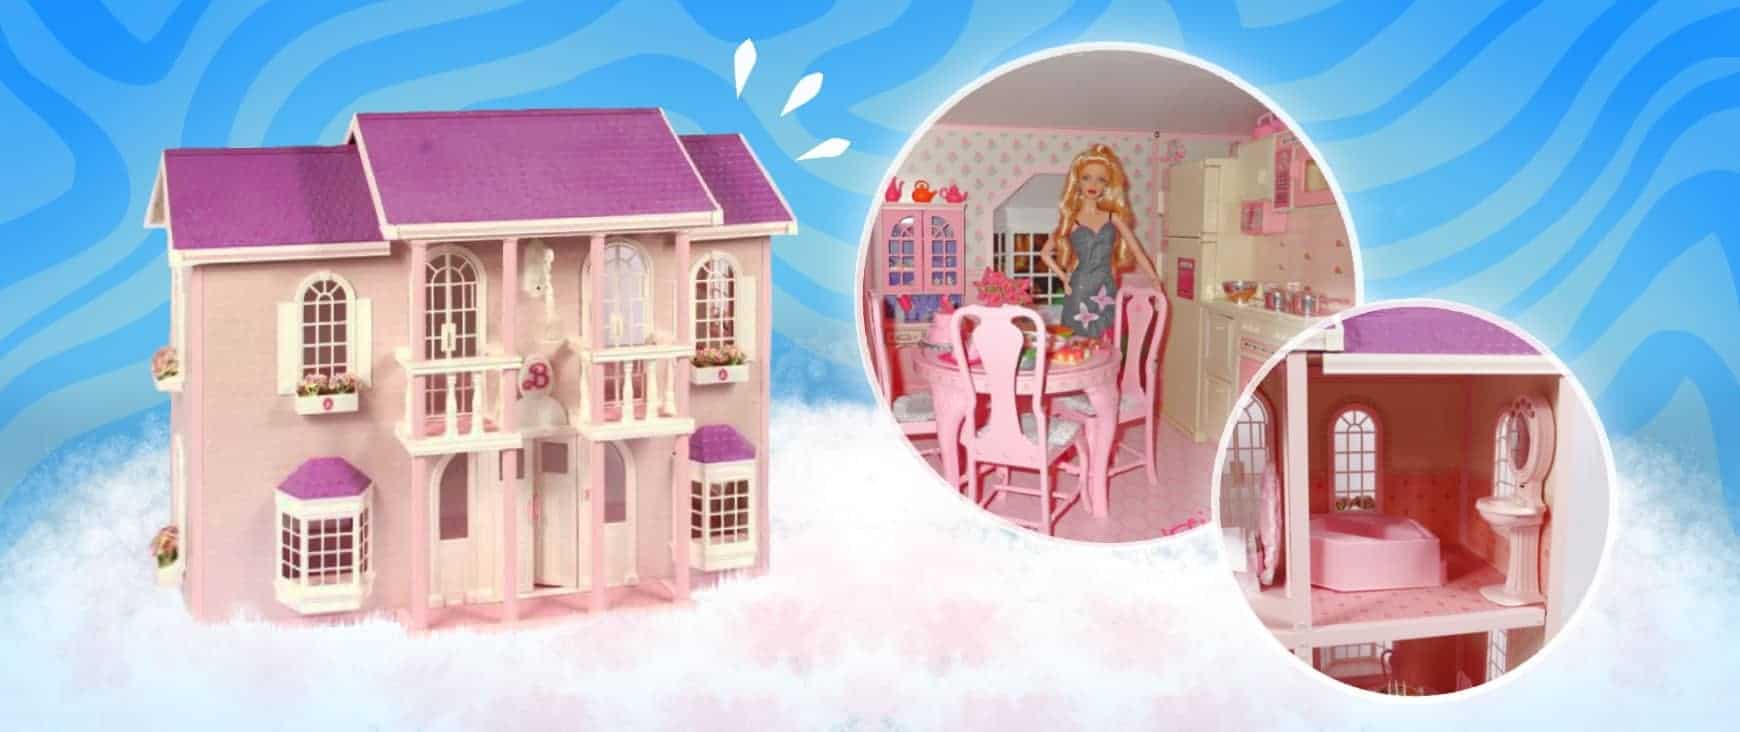 Reflectie Ironisch Oude tijden 90s Barbie Playsets: Best Houses, Vehicles & Addons – 90s Toys